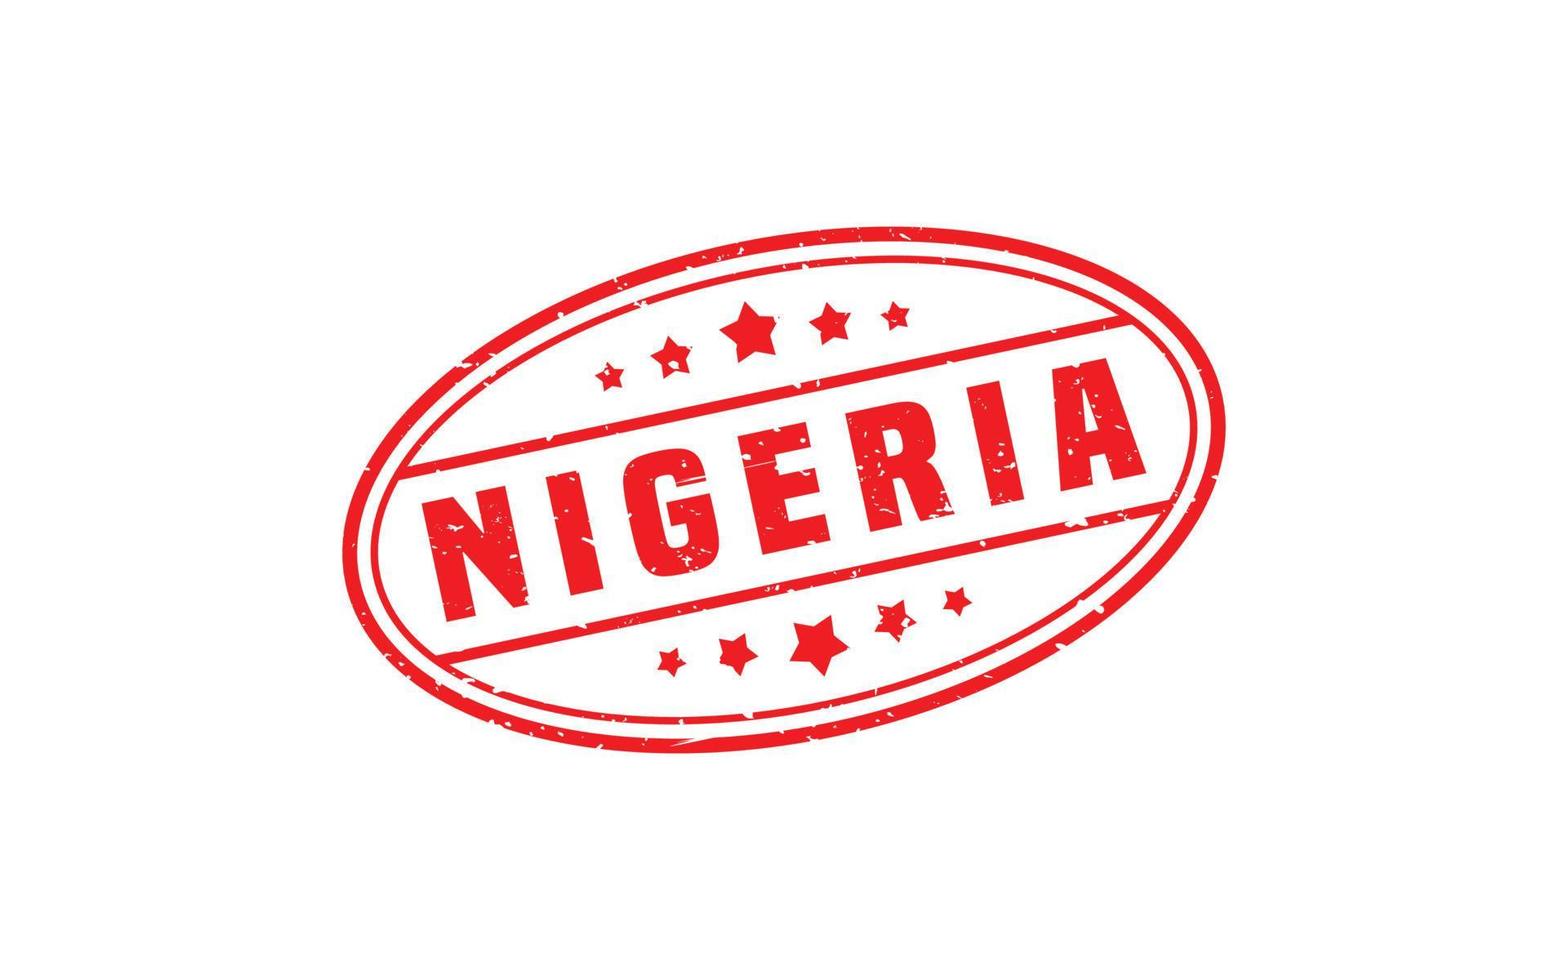 Nigeria-Stempelgummi mit Grunge-Stil auf weißem Hintergrund vektor